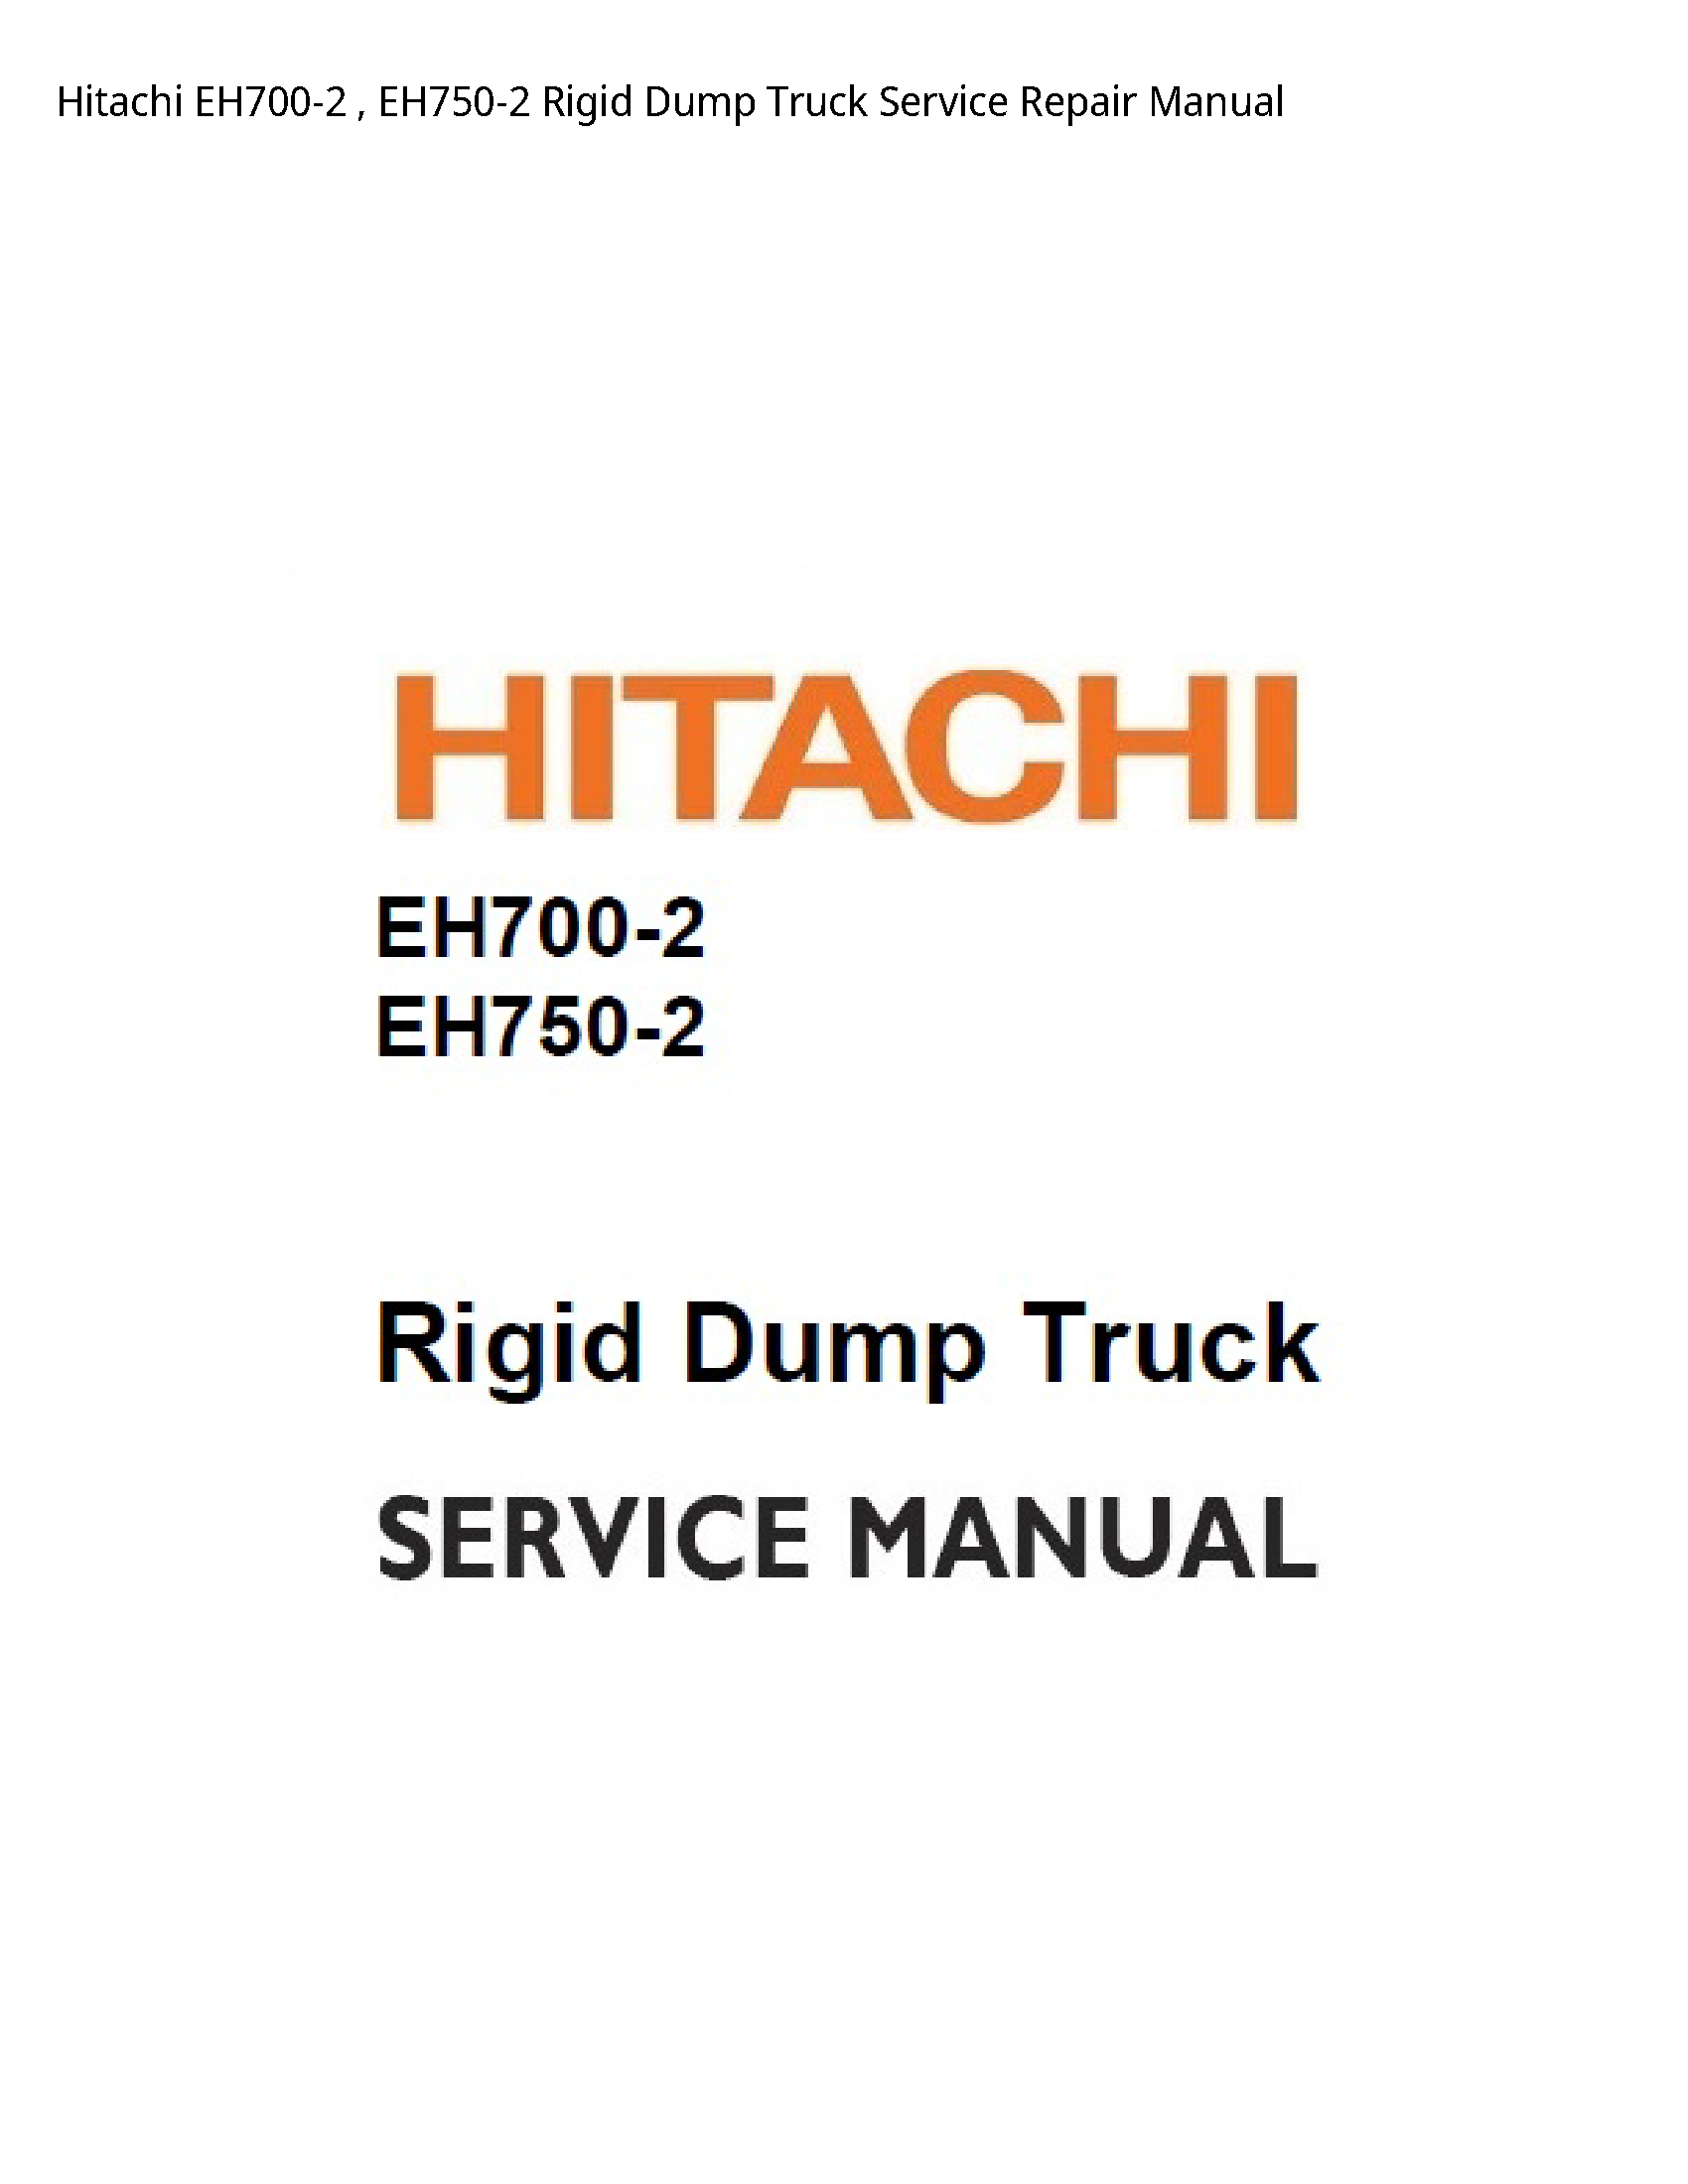 Hitachi EH700-2 Rigid Dump Truck manual